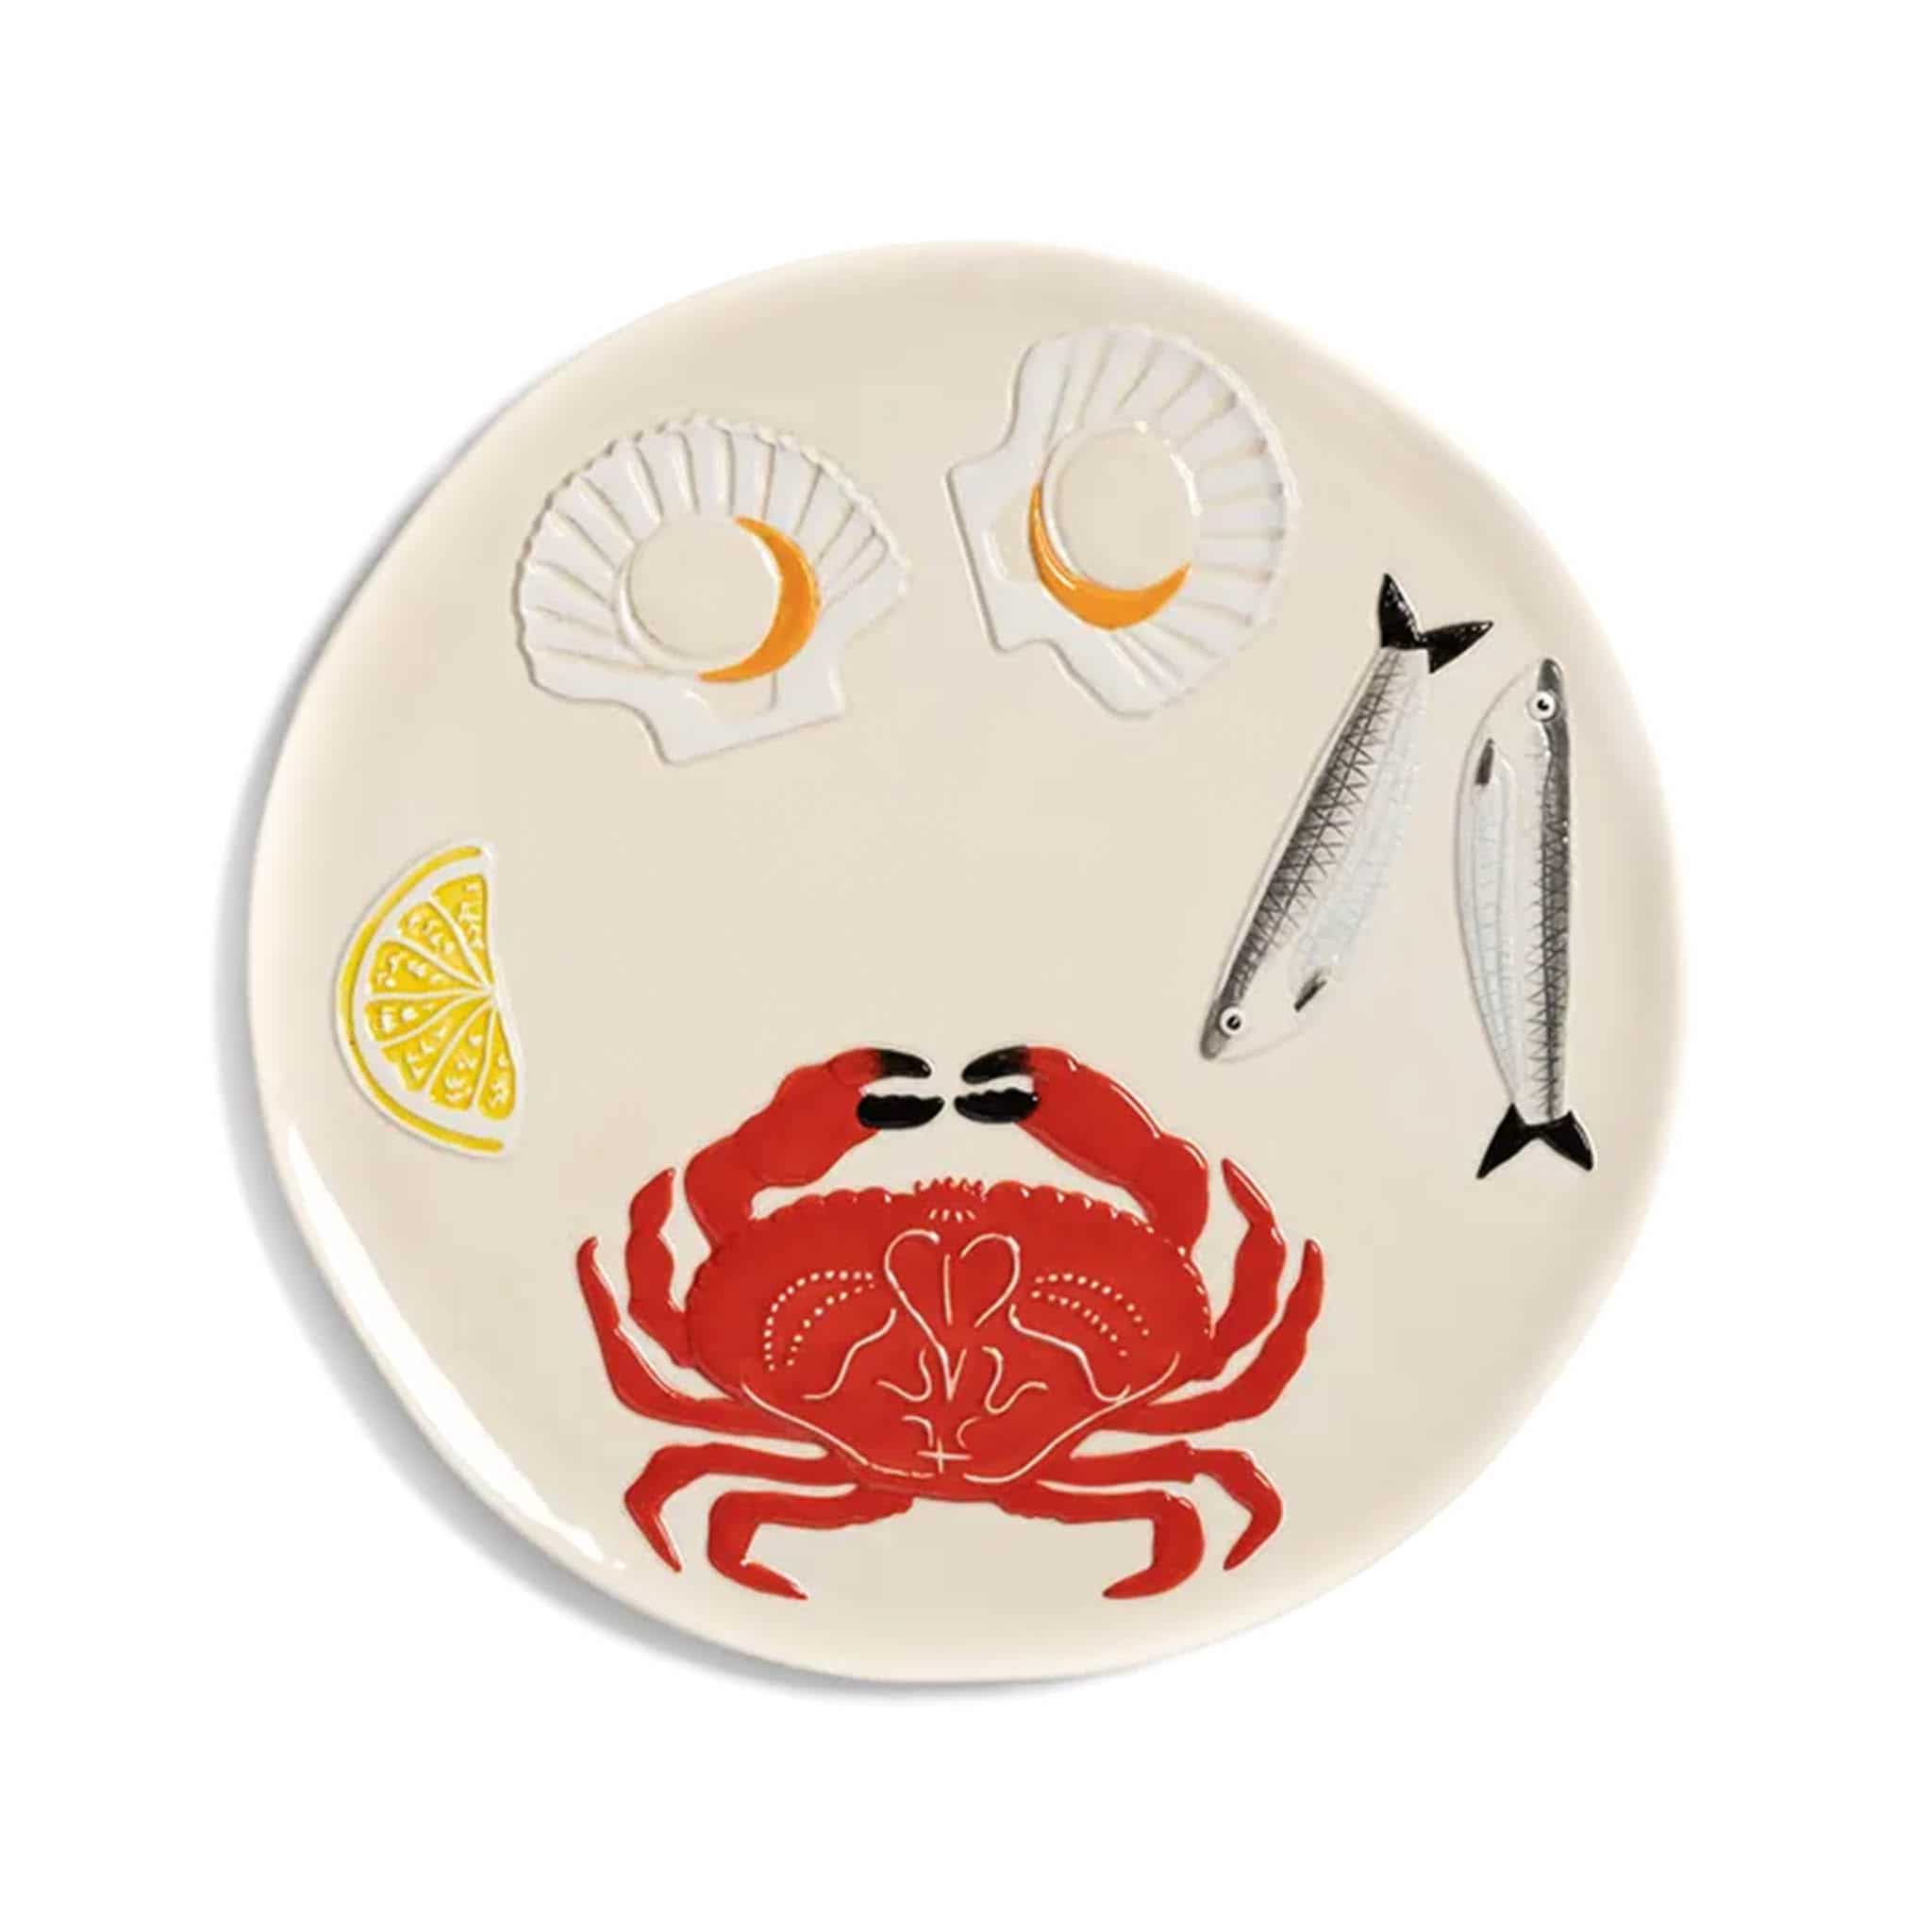 Crab Ceramic Platter, 26.5cm